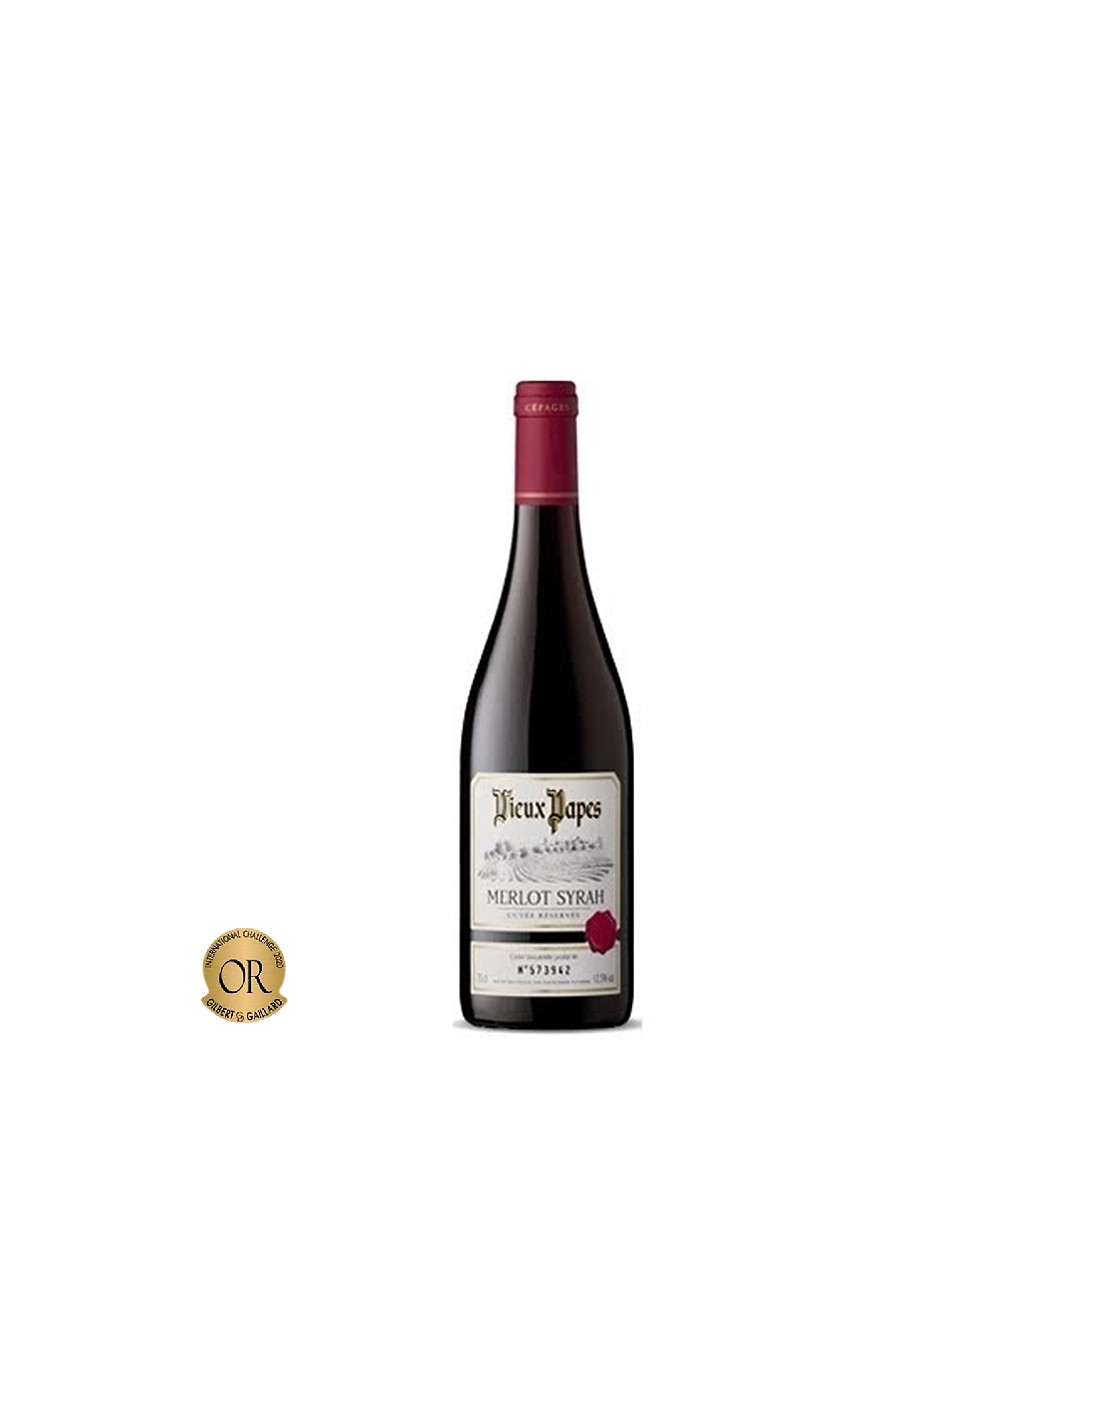 Vin rosu sec, Merlot-Syrah, Vieux Papes, 0.75L, 12% alc., Franta alcooldiscount.ro